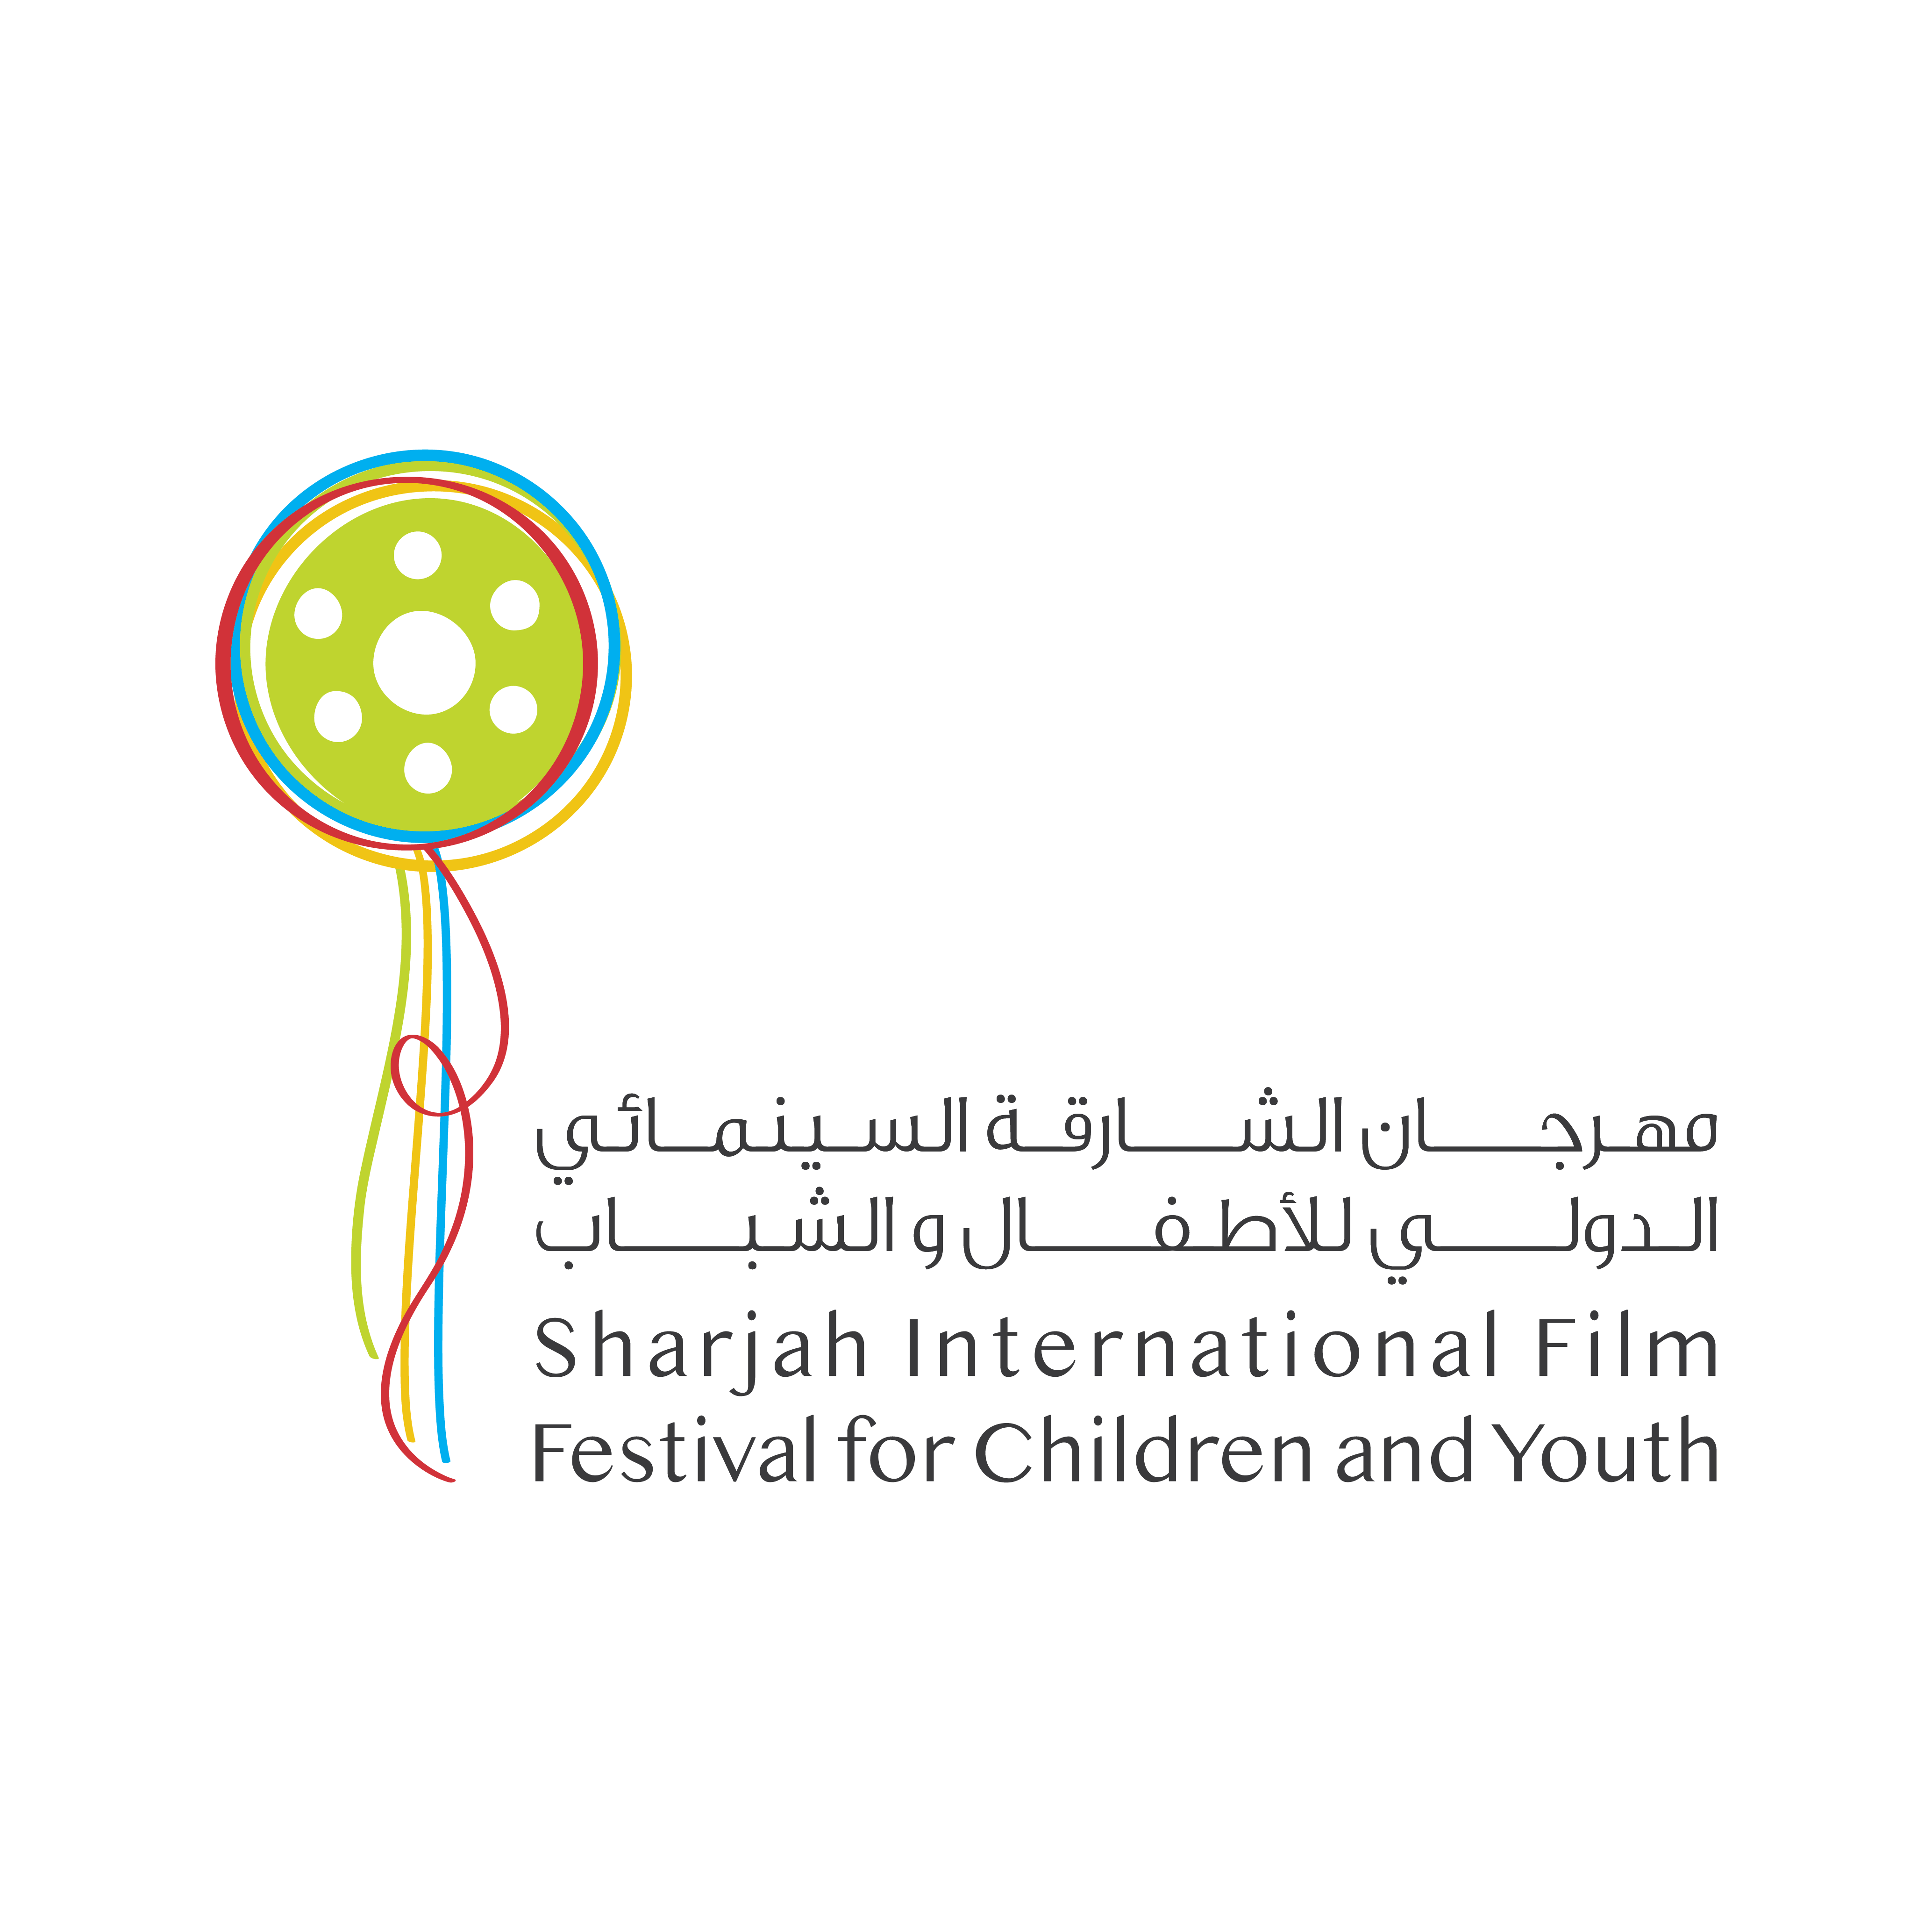 100-فيلم-من-43-دولة-تتنافس-على-جوائز-«الشارقة-السينمائي-الدولي-للأطفال-والشباب»